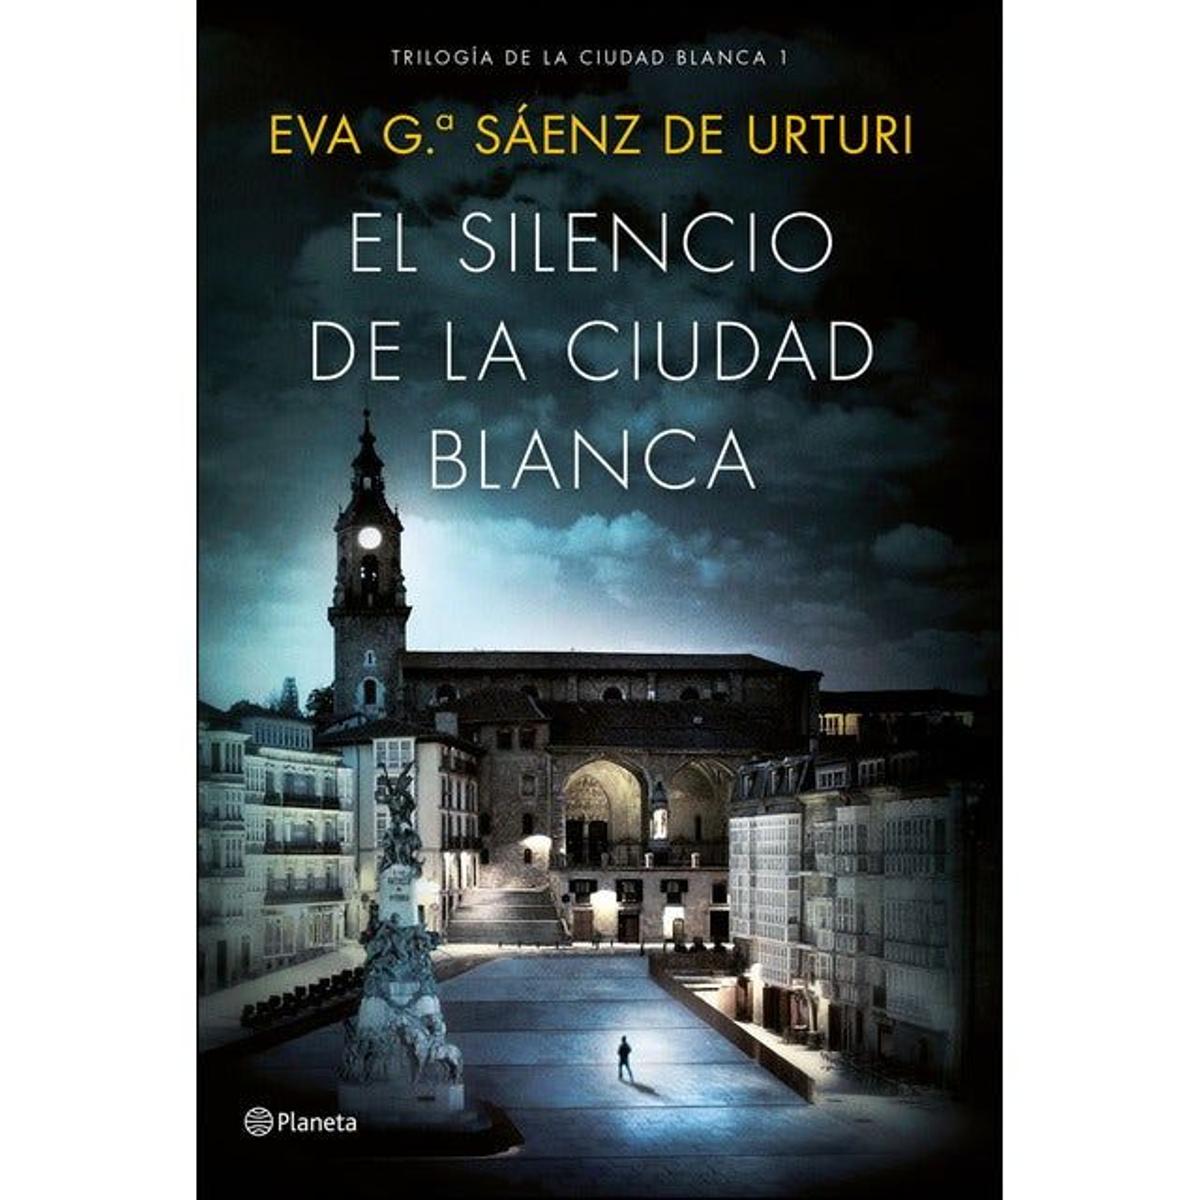 El silencio de la ciudad blanca, de Eva García Sáenz de Urturi